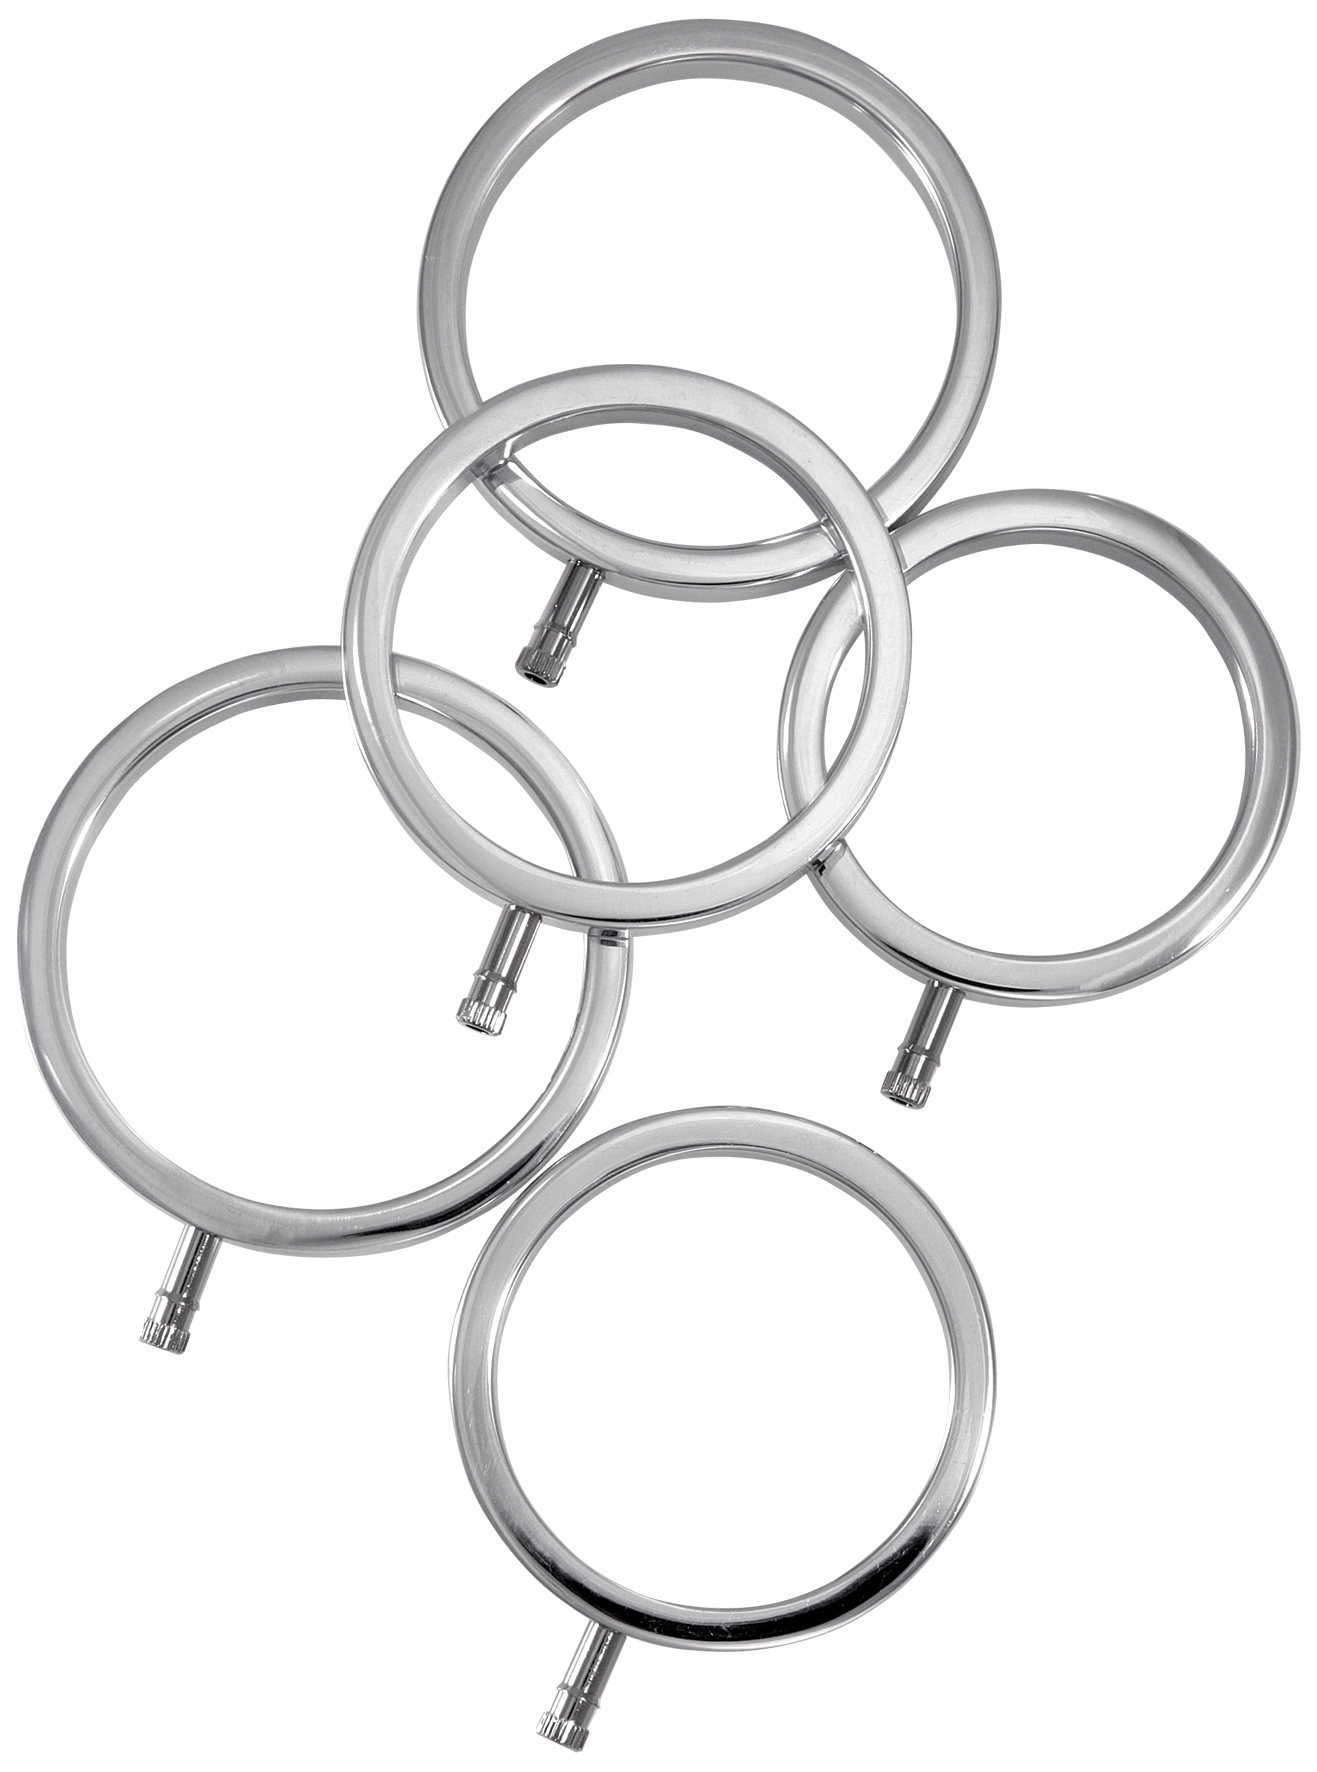 ElectraStim Solid Metal Cock Ring Set 5 sizes